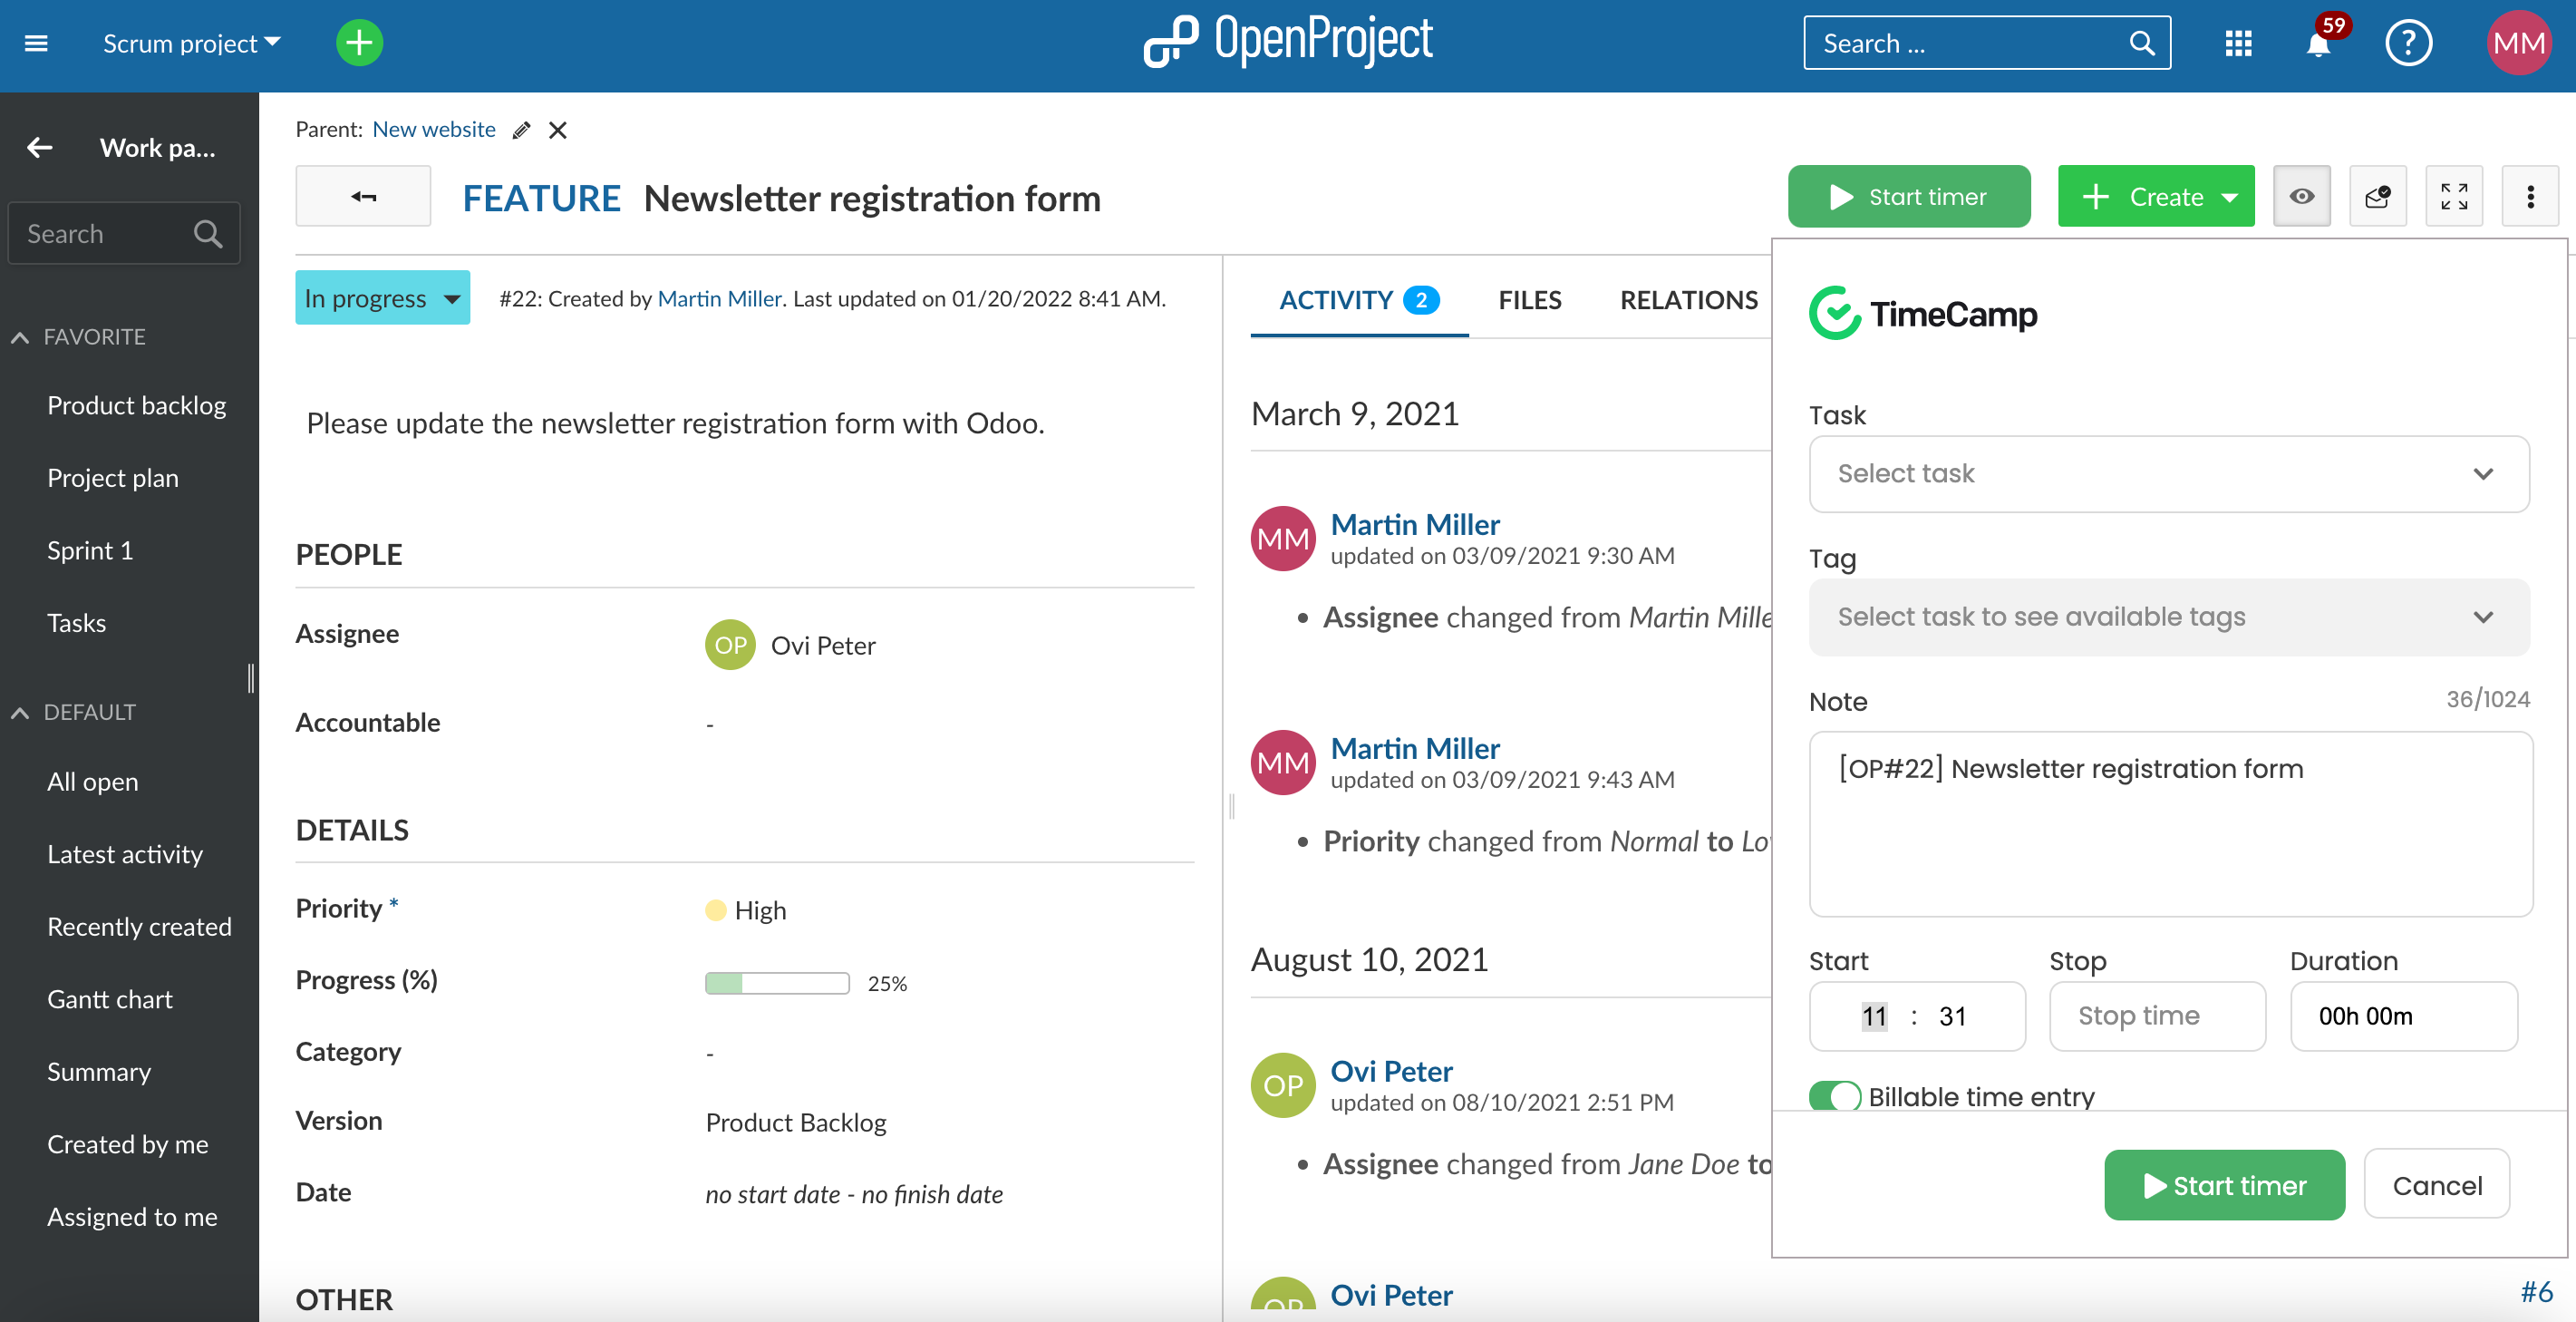 OpenProject Arbeitspaket Detailansicht mit Dropdown vom Start-Timer, um TimeCamp Projekt und Task auszuwählen